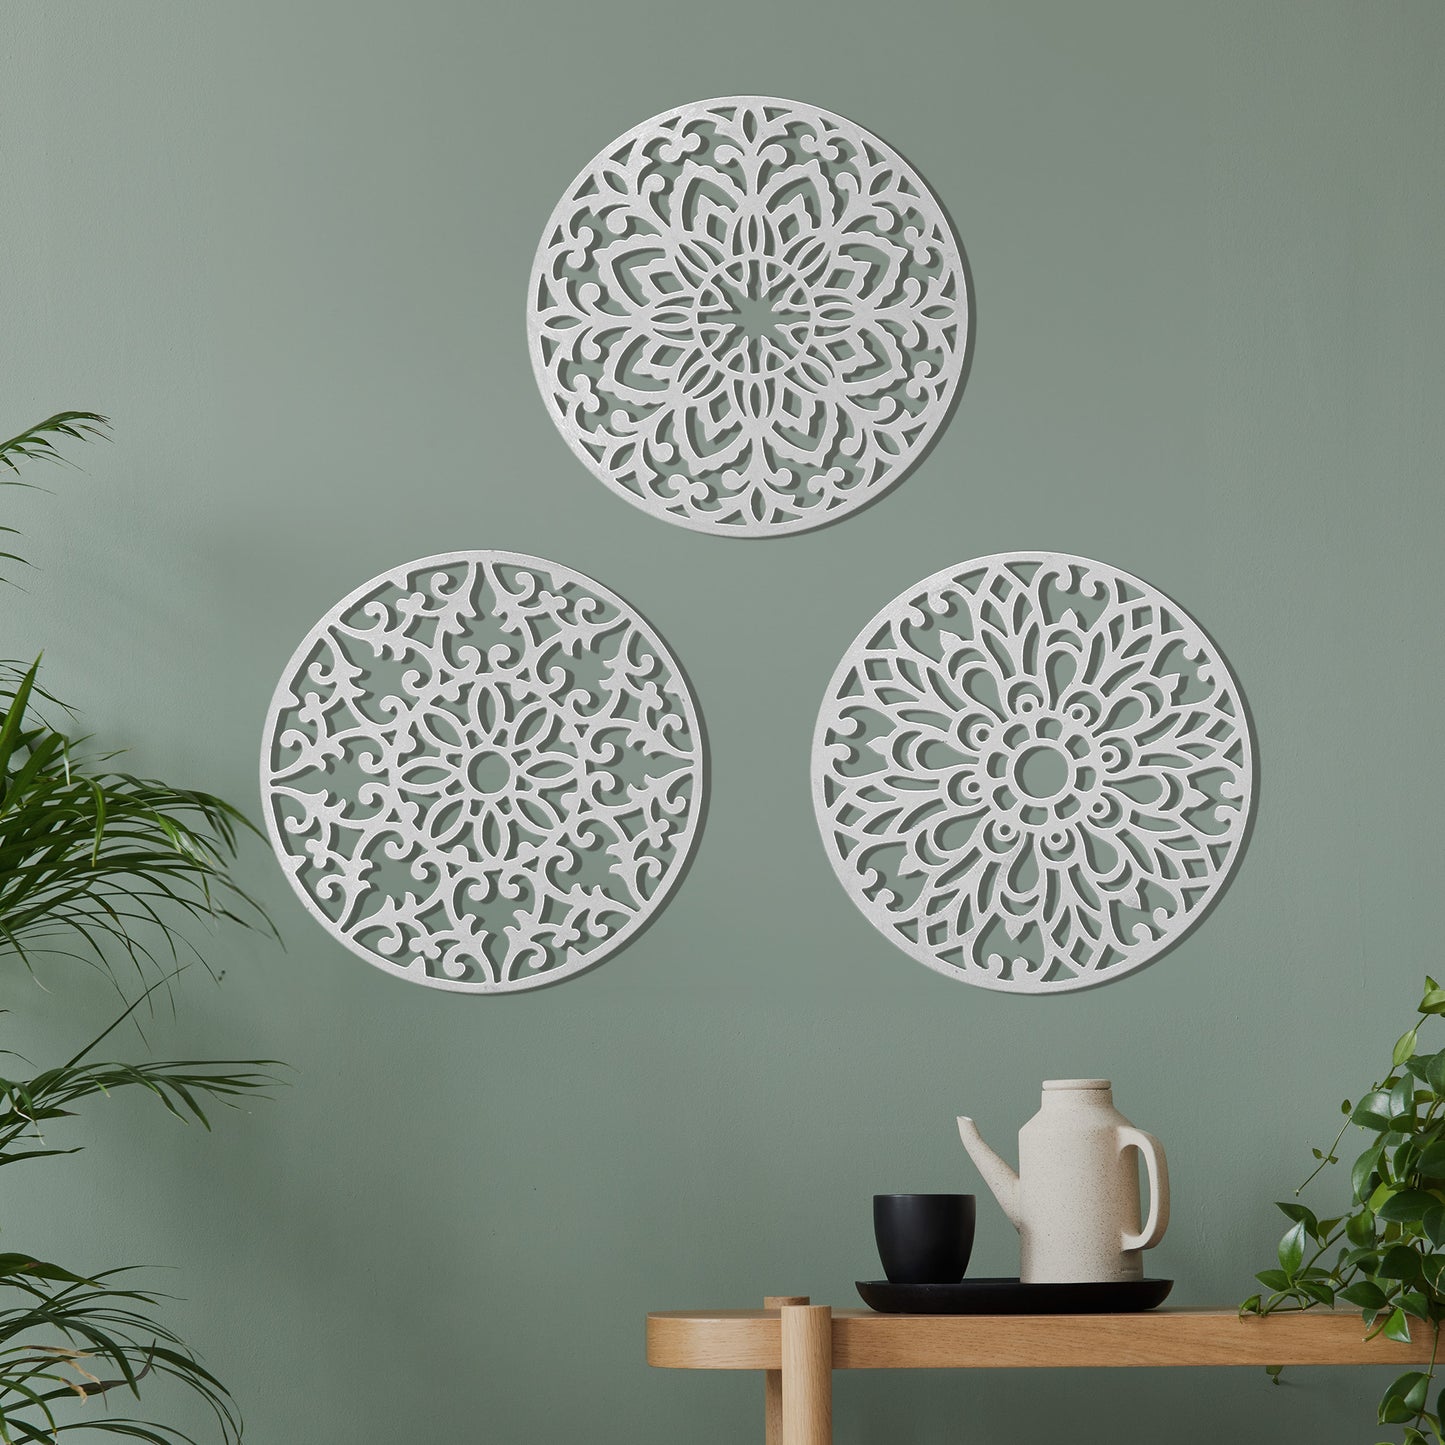 Decorative Round "Mandala Set of 3" - White